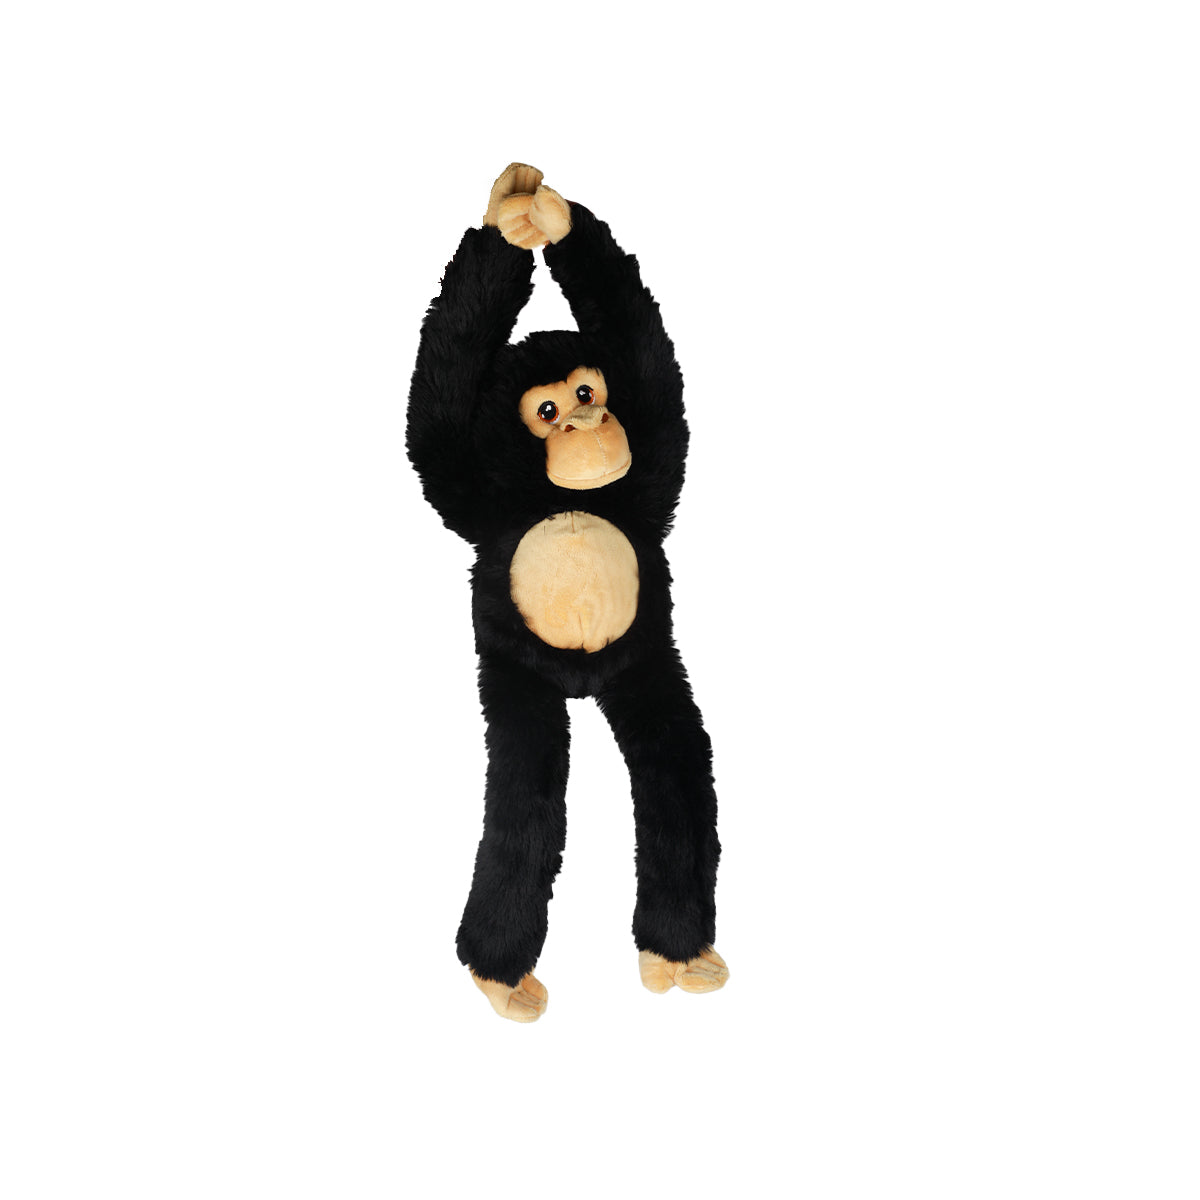 50cm hanging chimp plush toy